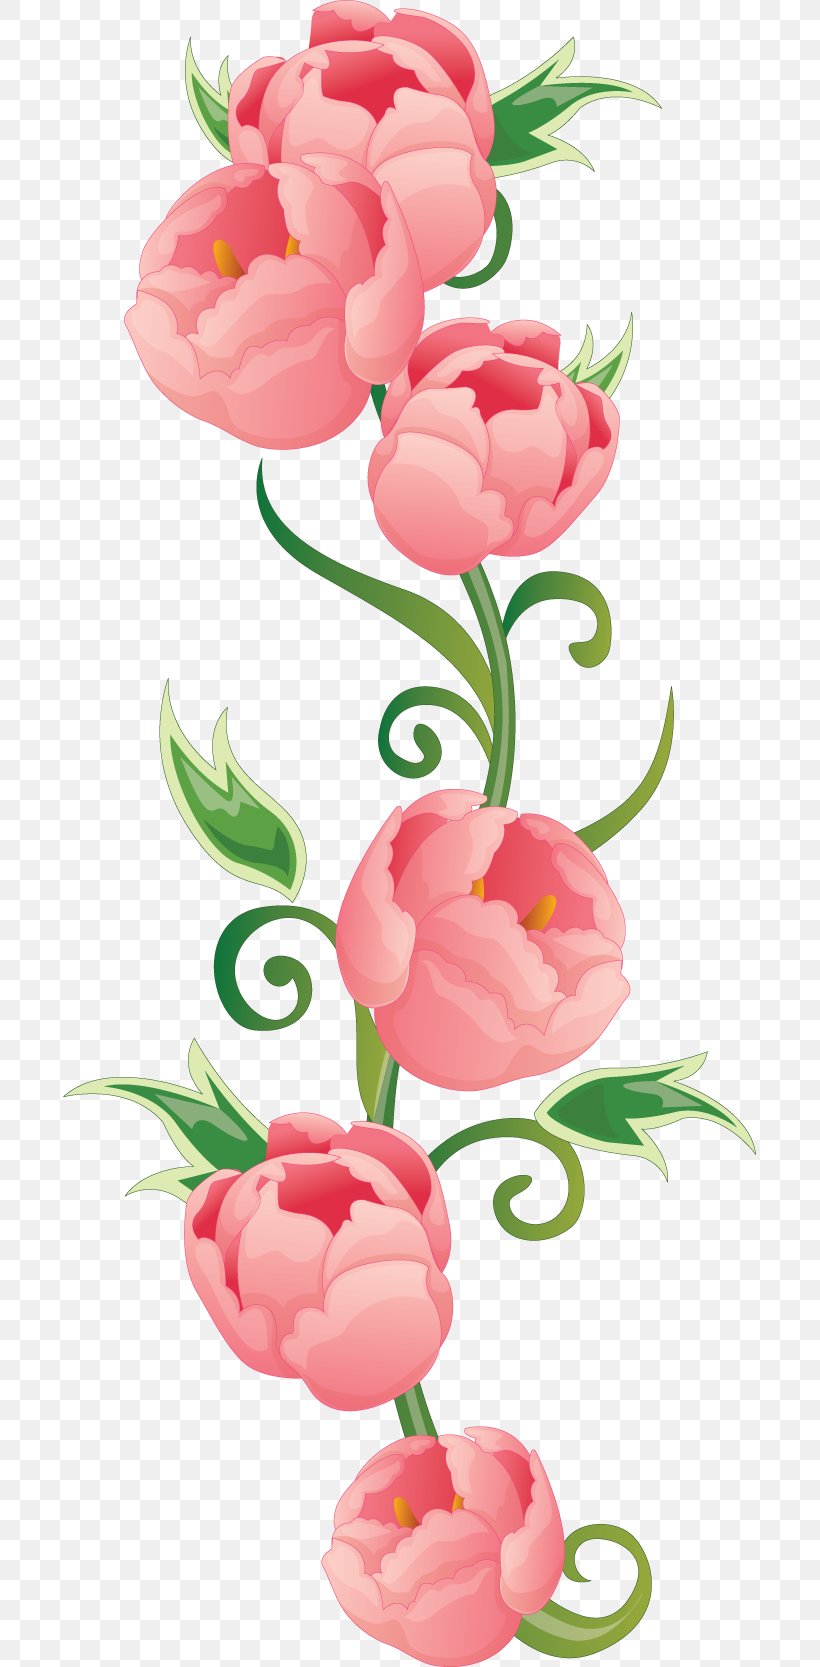 Flower Floral Design Clip Art, PNG, 693x1667px, Flower, Cut Flowers, Digital Image, Floral Design, Floristry Download Free